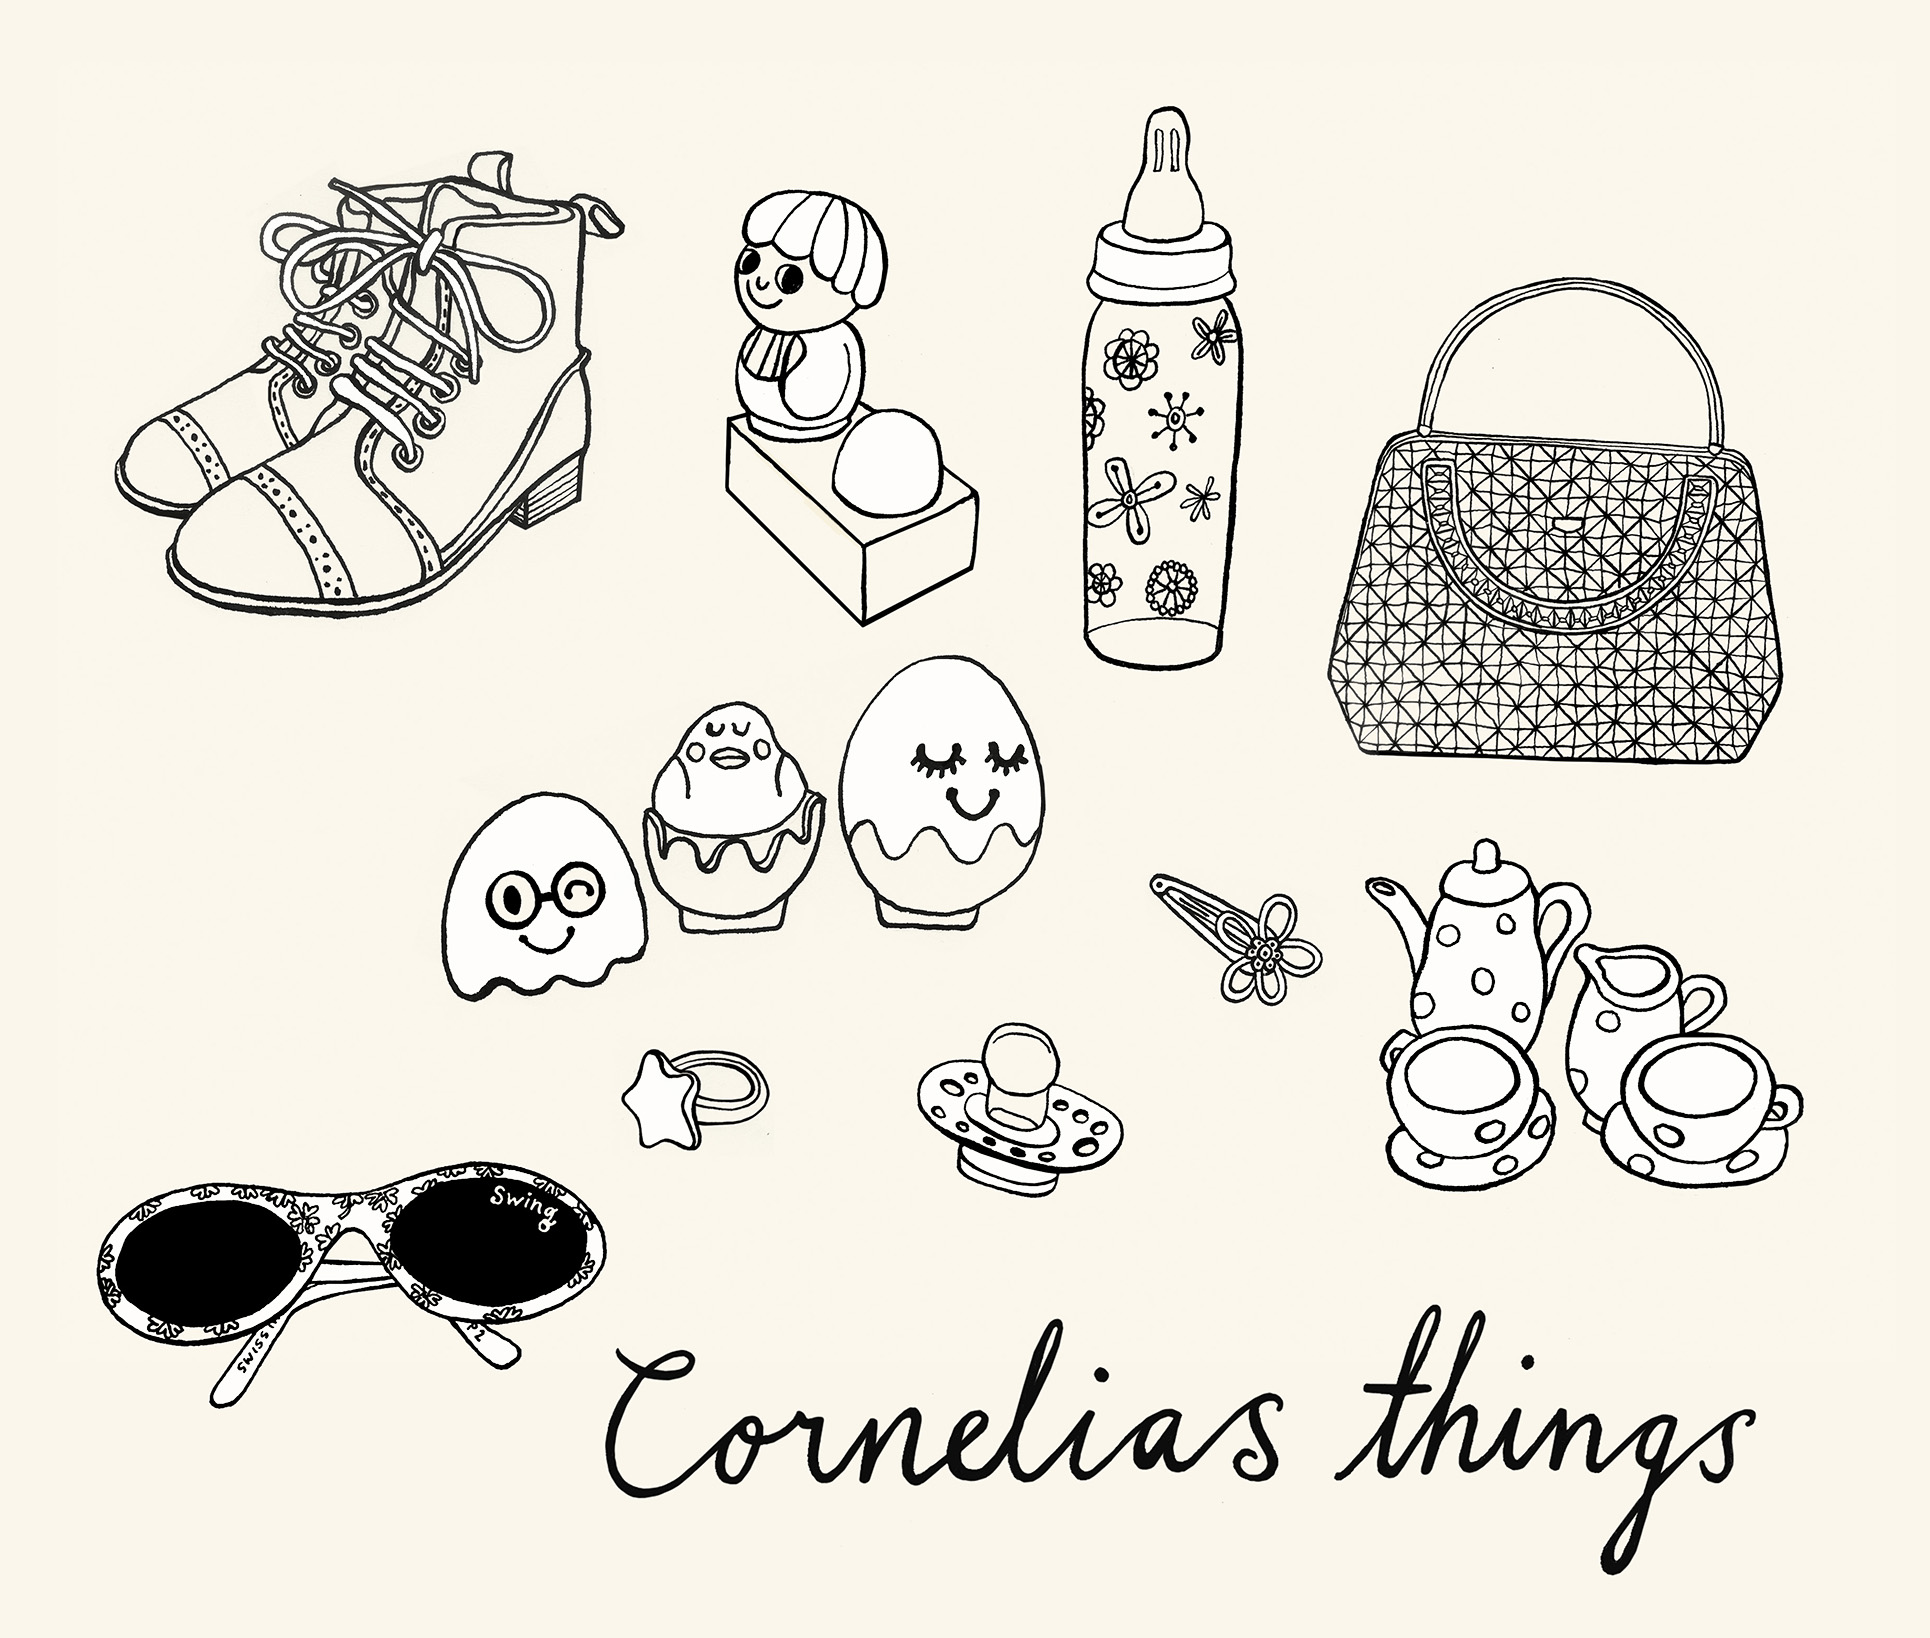 Cornelias things